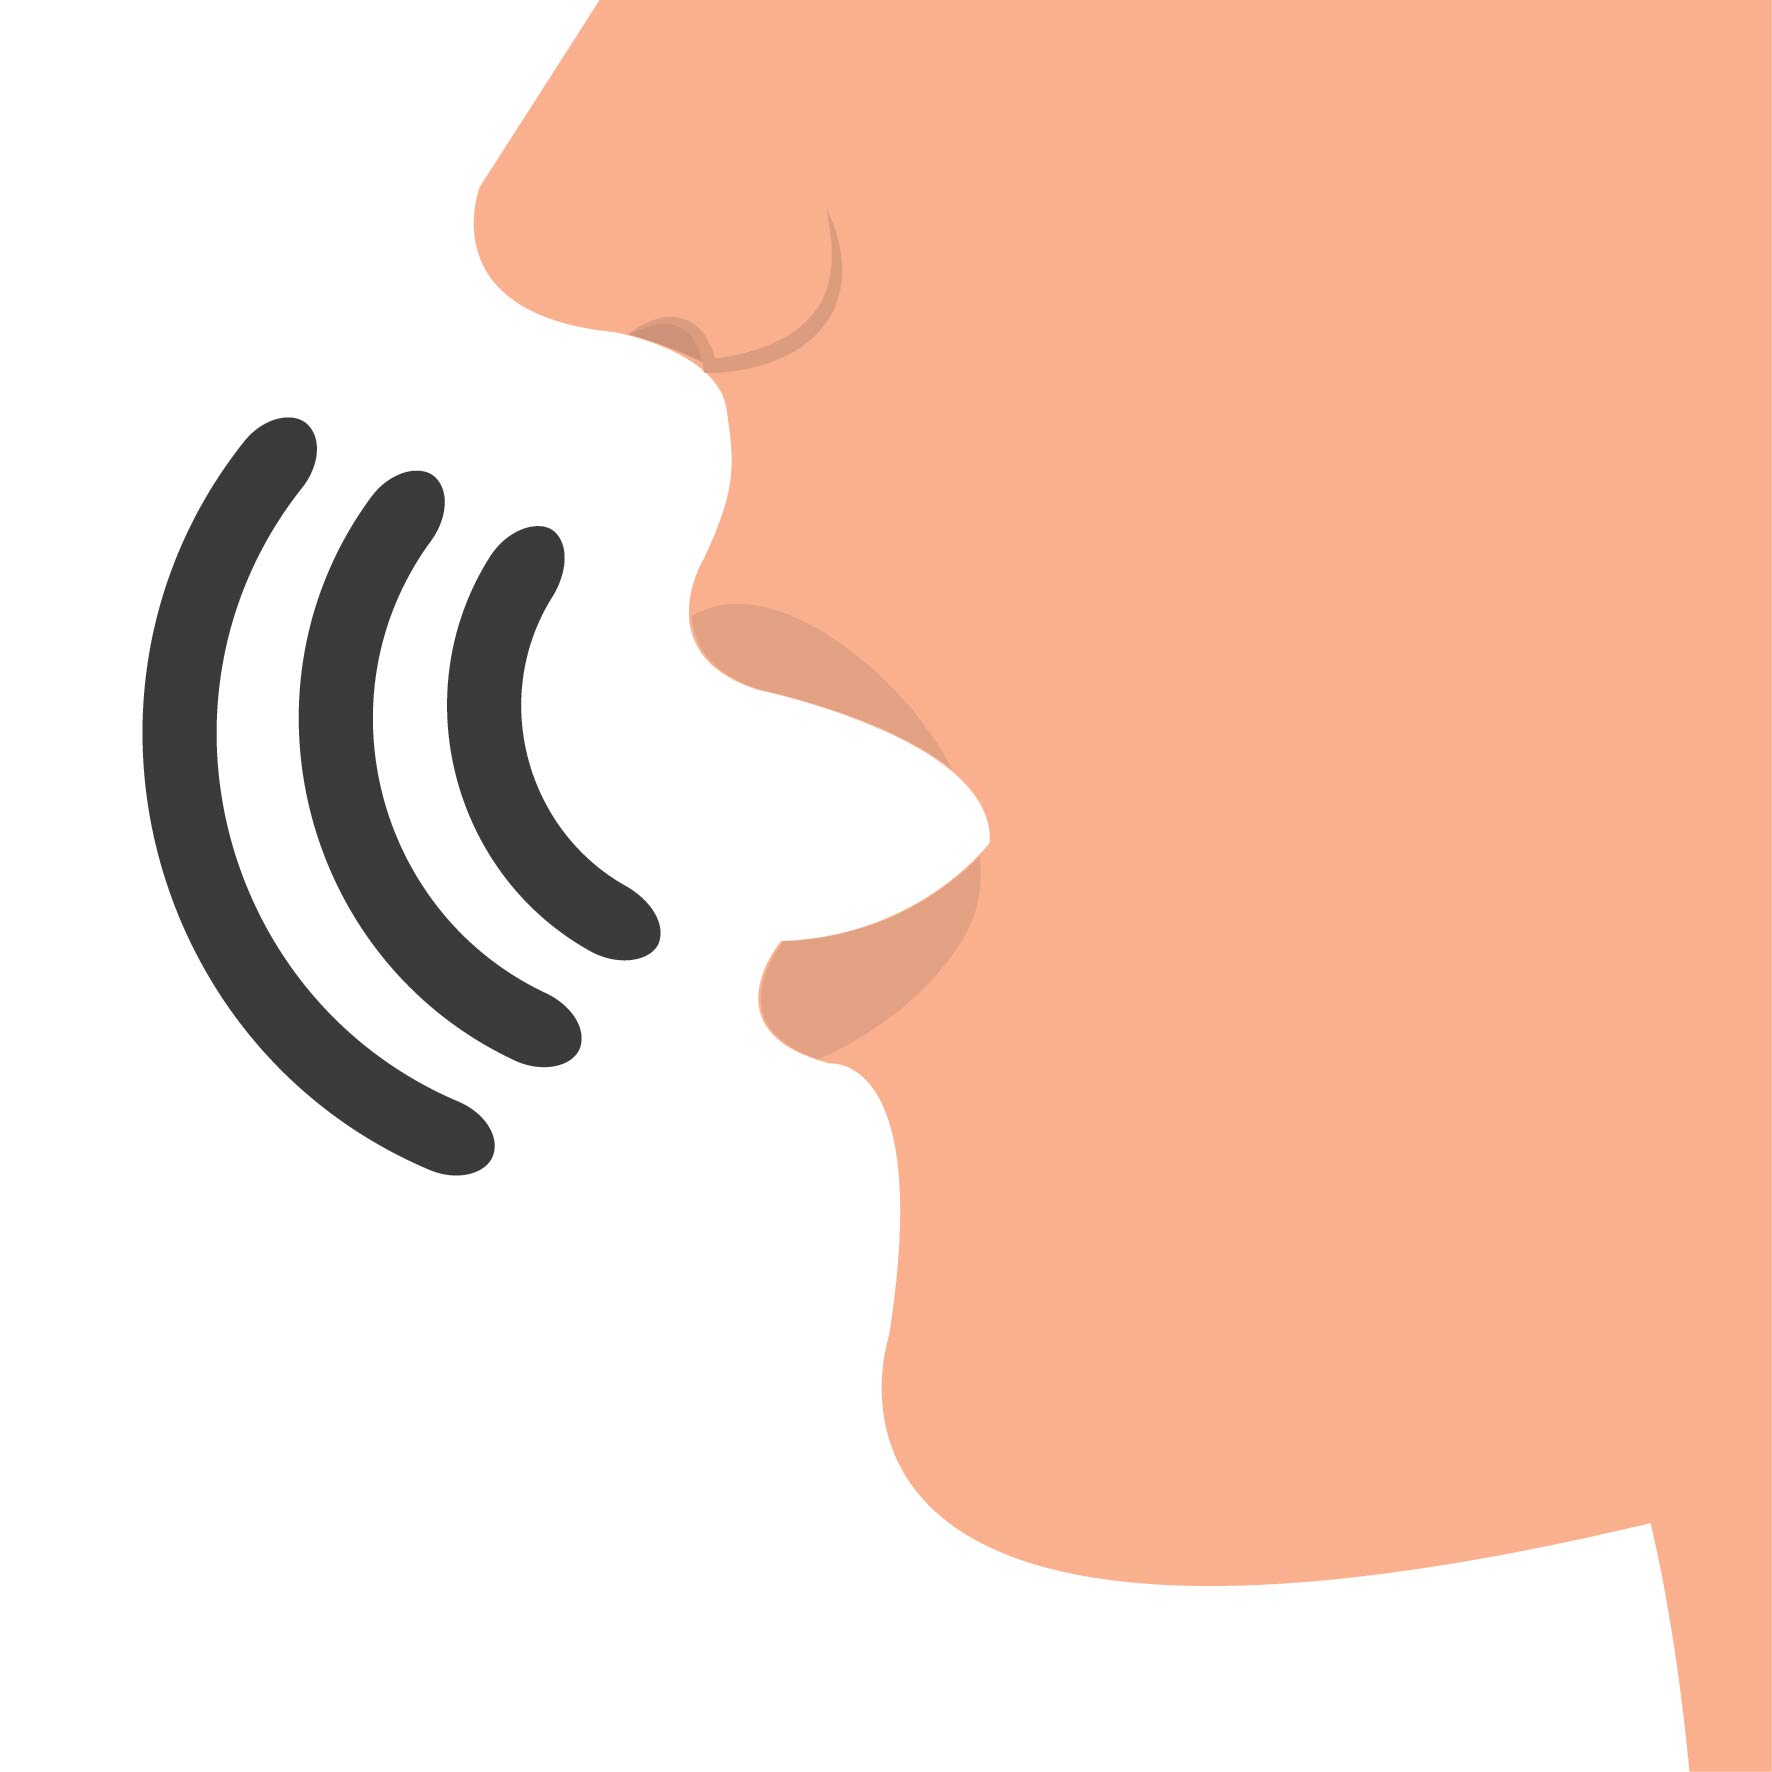 Imagem ilustrativa mostrando o som sendo emitido da boca de uma pessoa